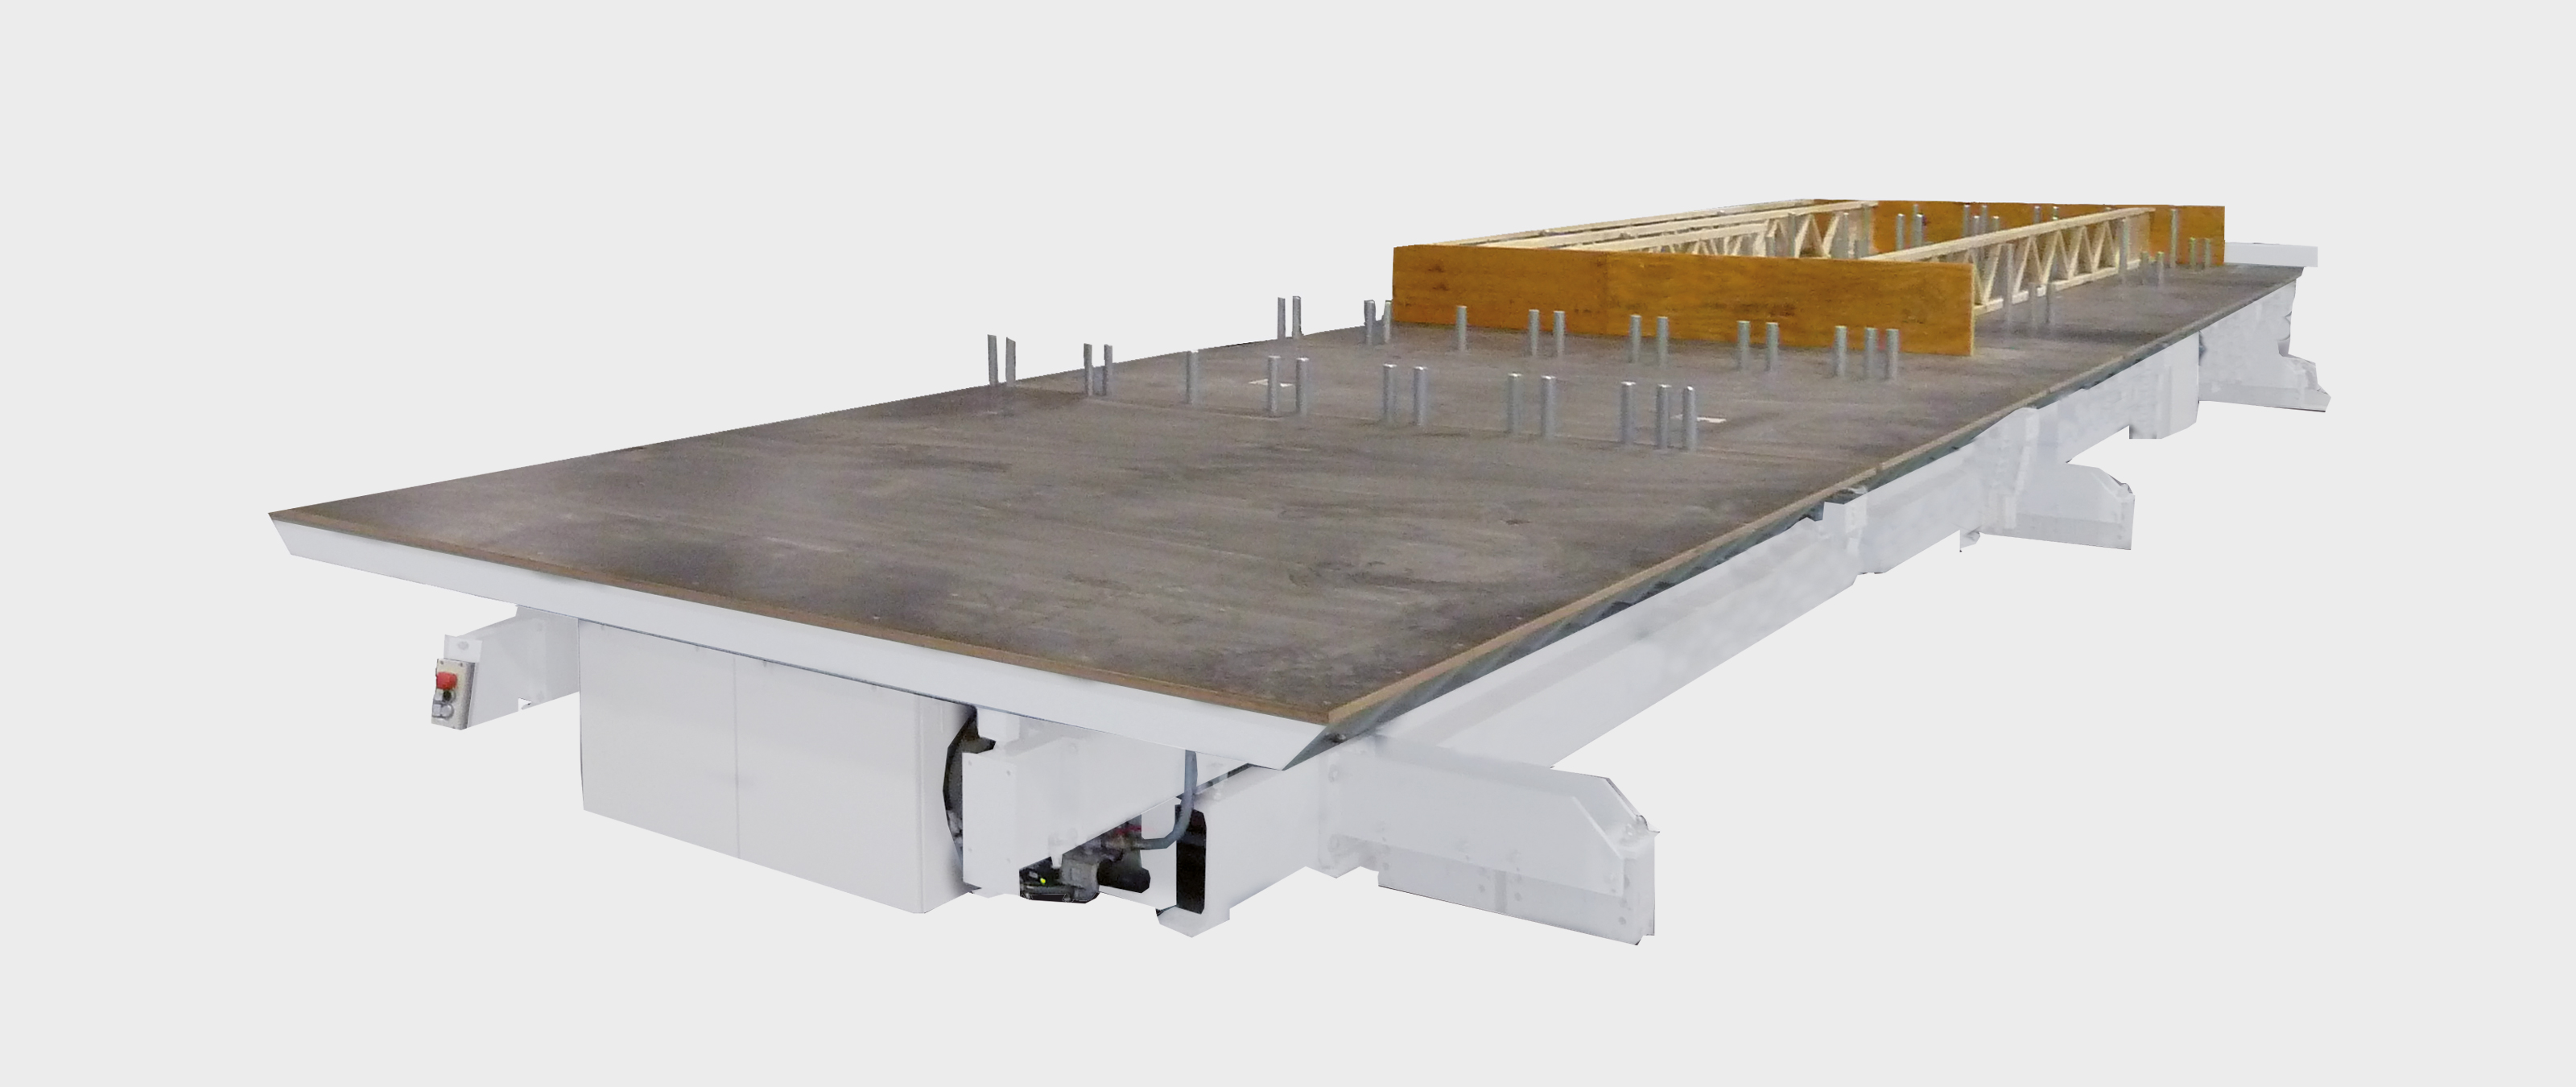 WEINMANN Dach- und Decken-Tisch BUILDTEQ F-500 Montagetisch